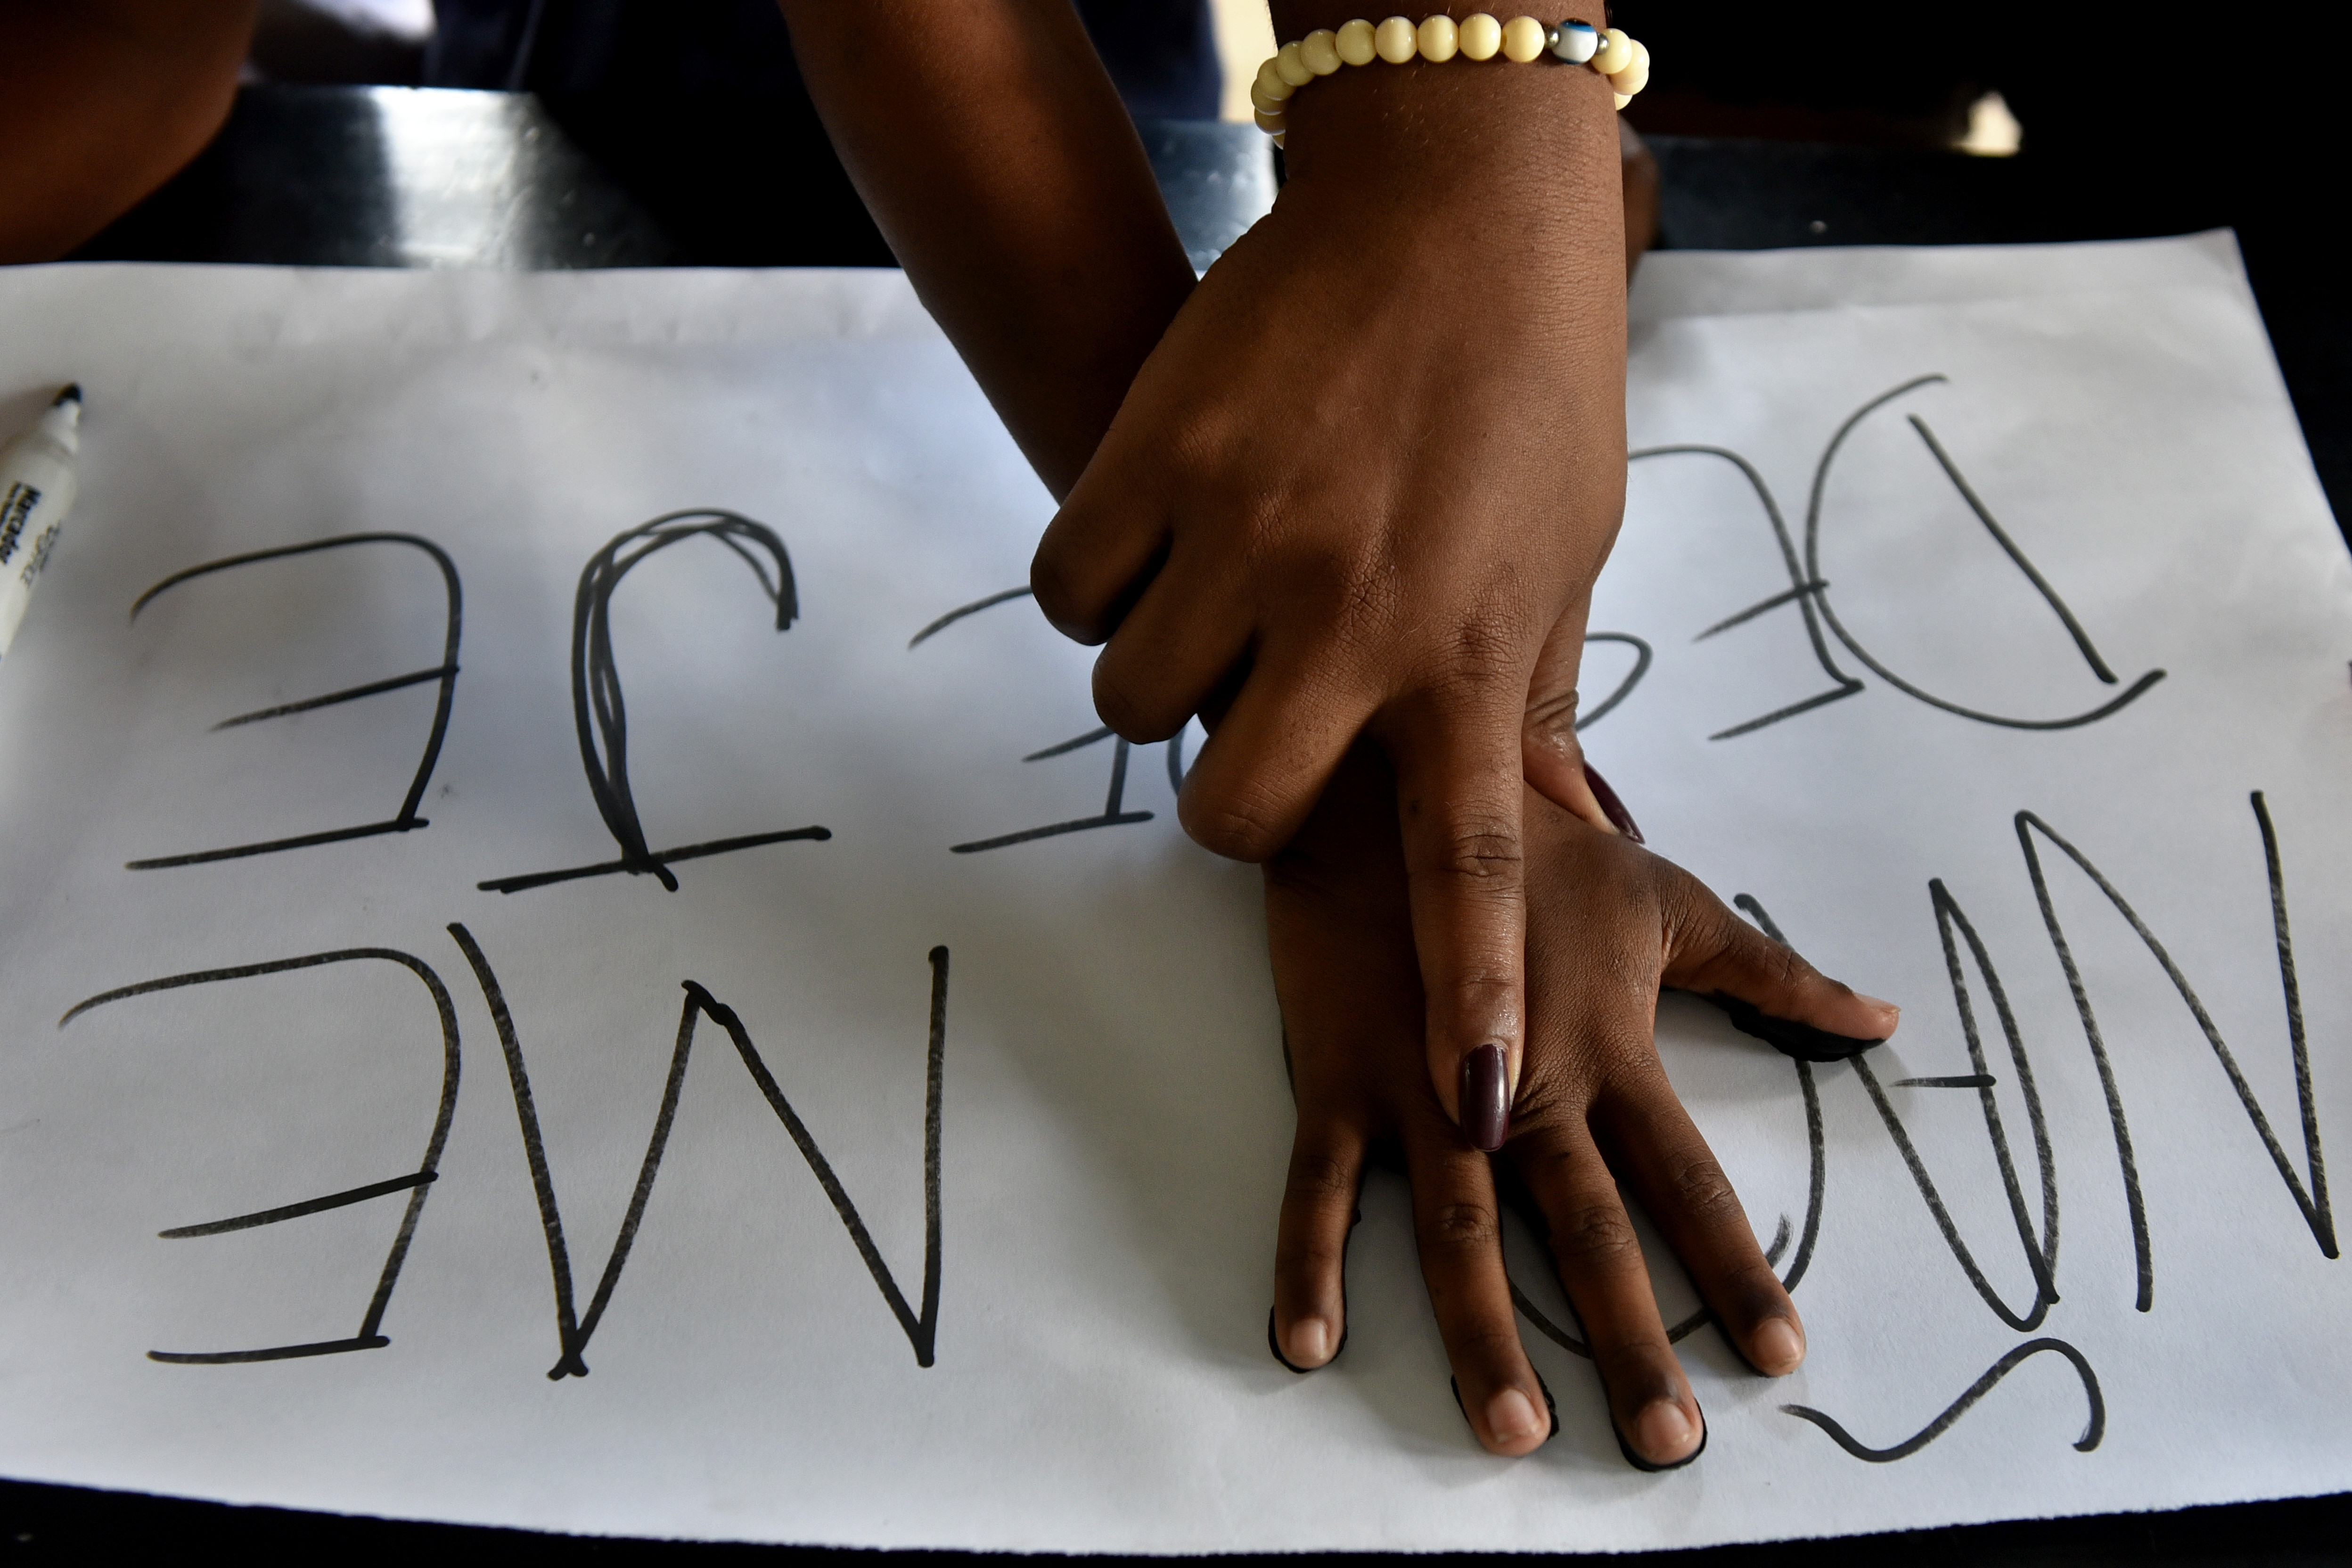  Moradores da Ocupação Chico Prego pintam cartazes para o ato que vai acontecer hj em frente na Câmara de vereadores de Vitória 